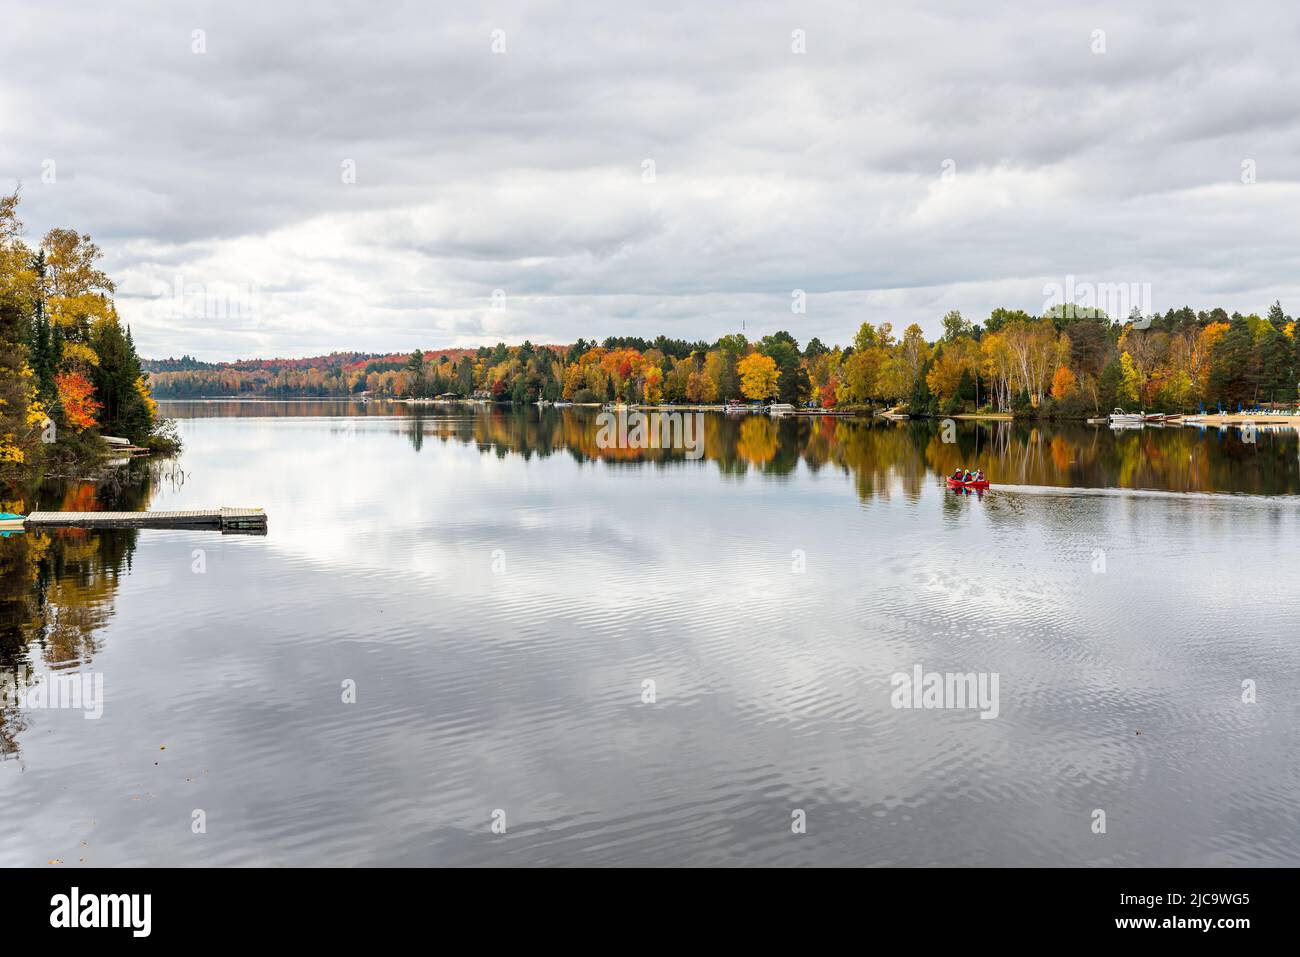 Hermoso lago con orillas boscosas en el pico del follaje otoñal en un día nublado de otoño. La gente en una canoa está en el medio del lago Foto de stock